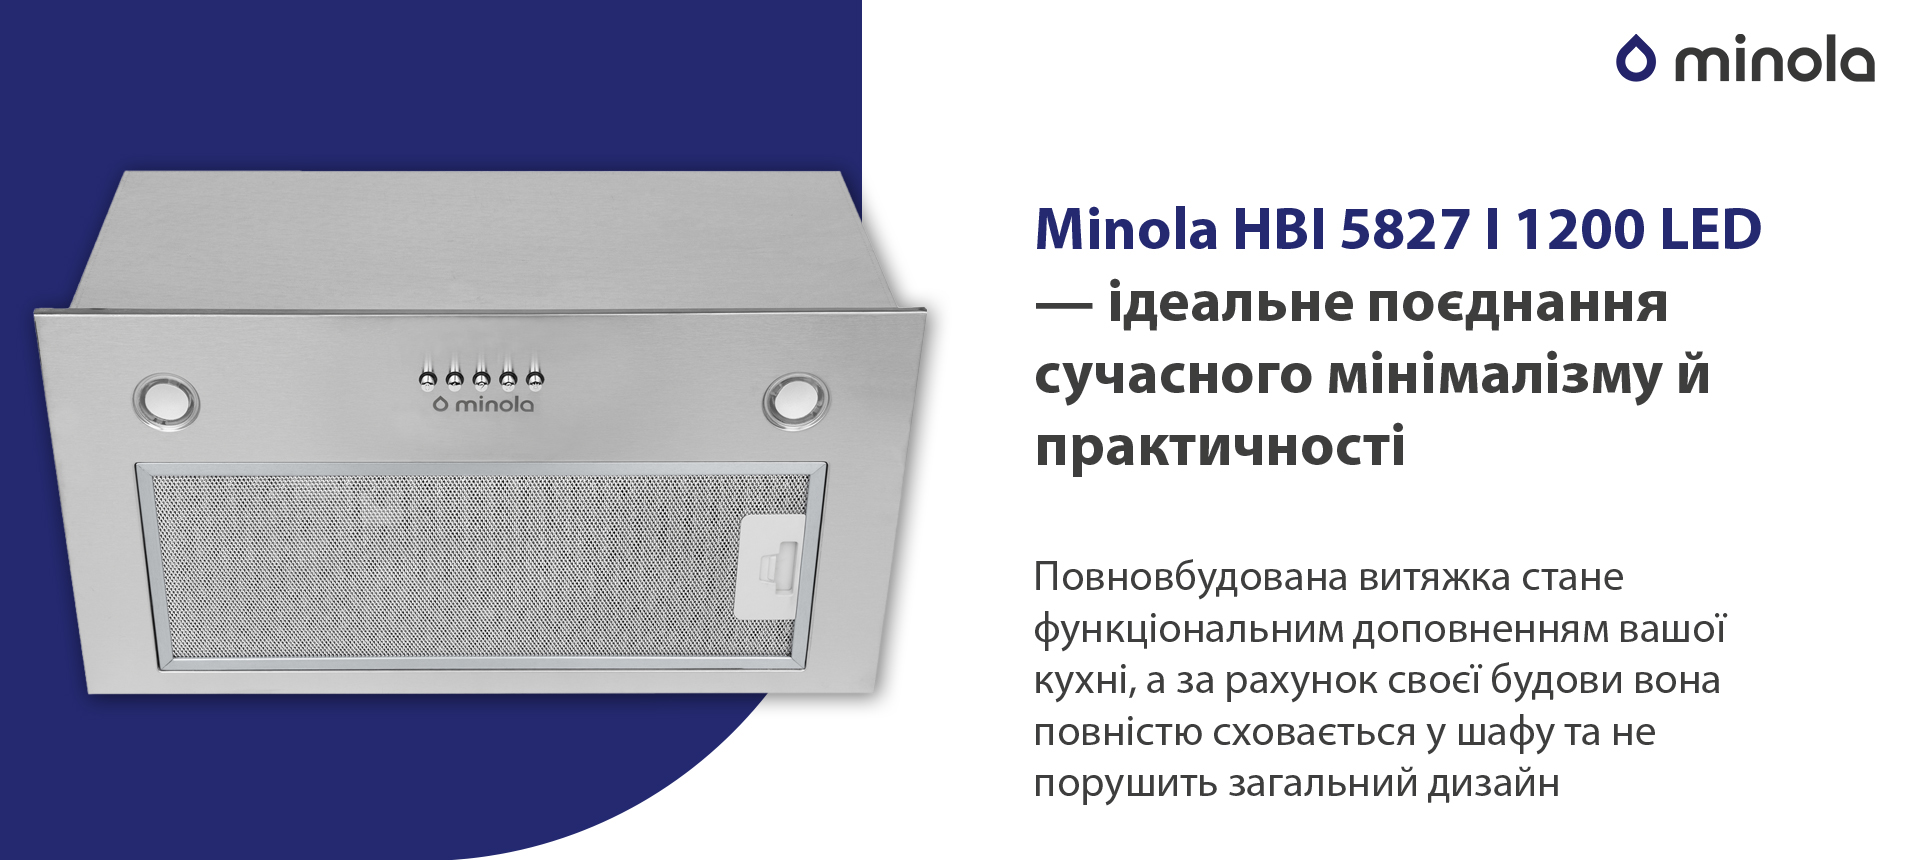 Minola HBI 5827 I 1200 LED в магазине в Киеве - фото 10